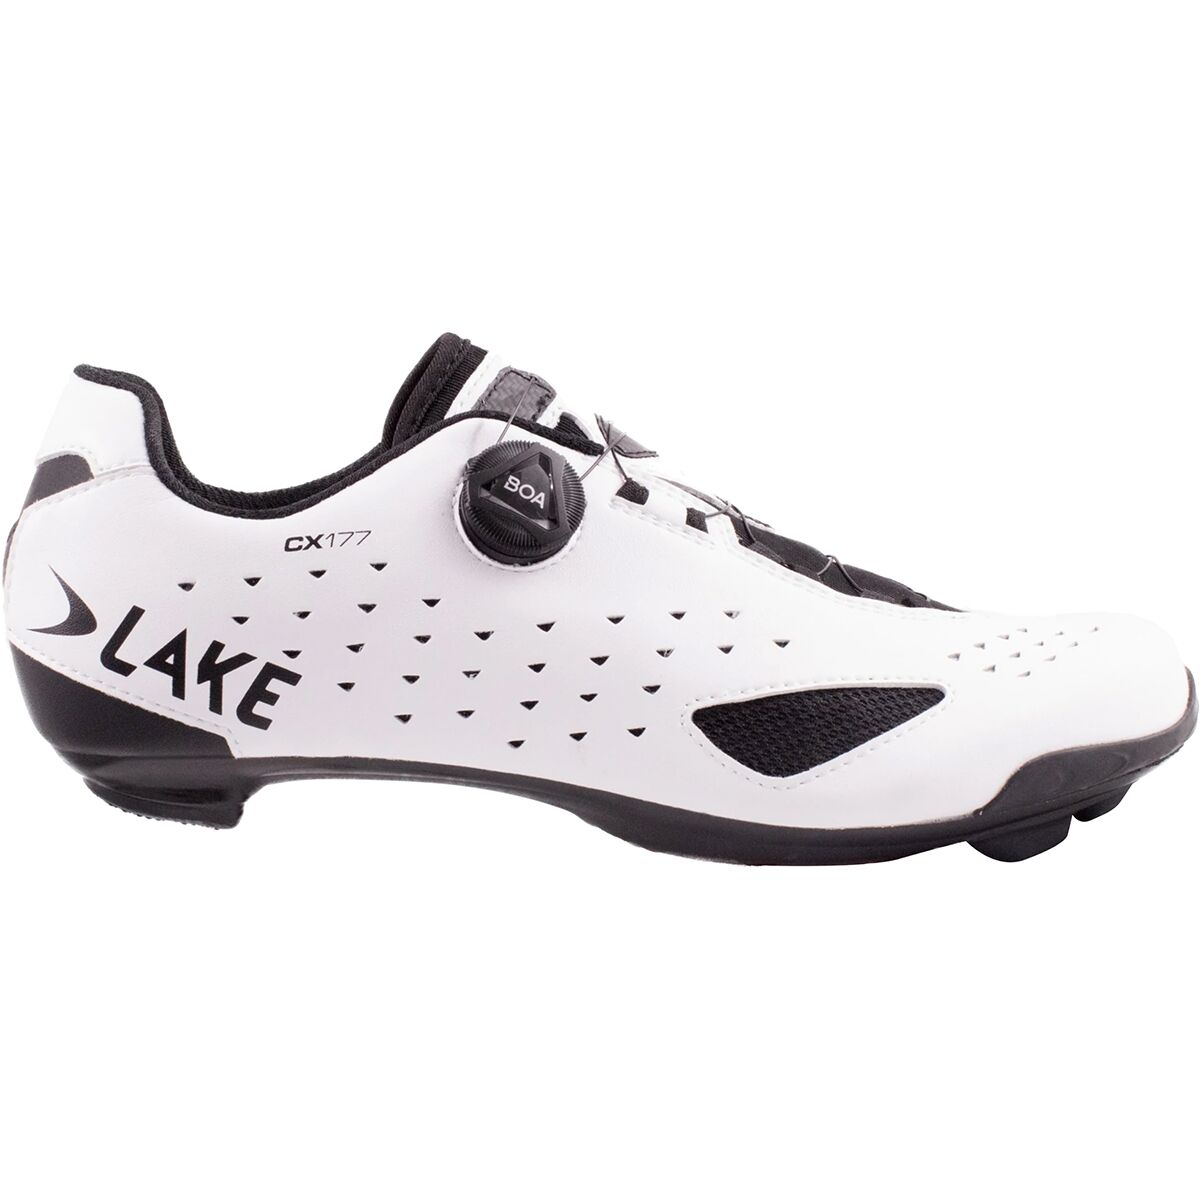 Lake CX177 Wide Cycling Shoe - Men's White/Black, 43.0